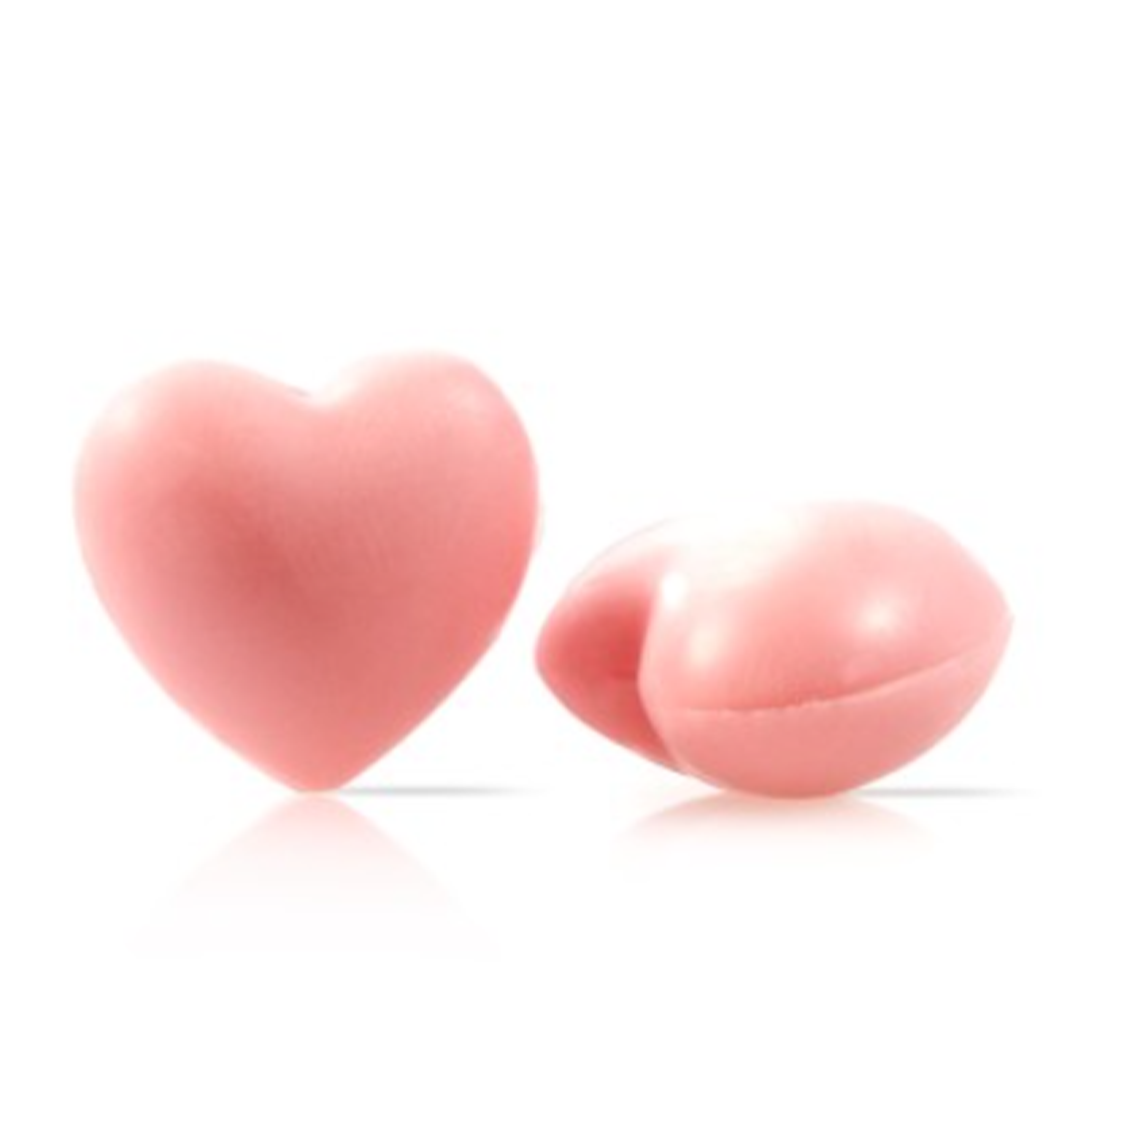 Шоколадный декор «Сердца объёмные» розовые, Dobla, Бельгия, 8 шт.   | Фото — Магазин Andy Chef  1